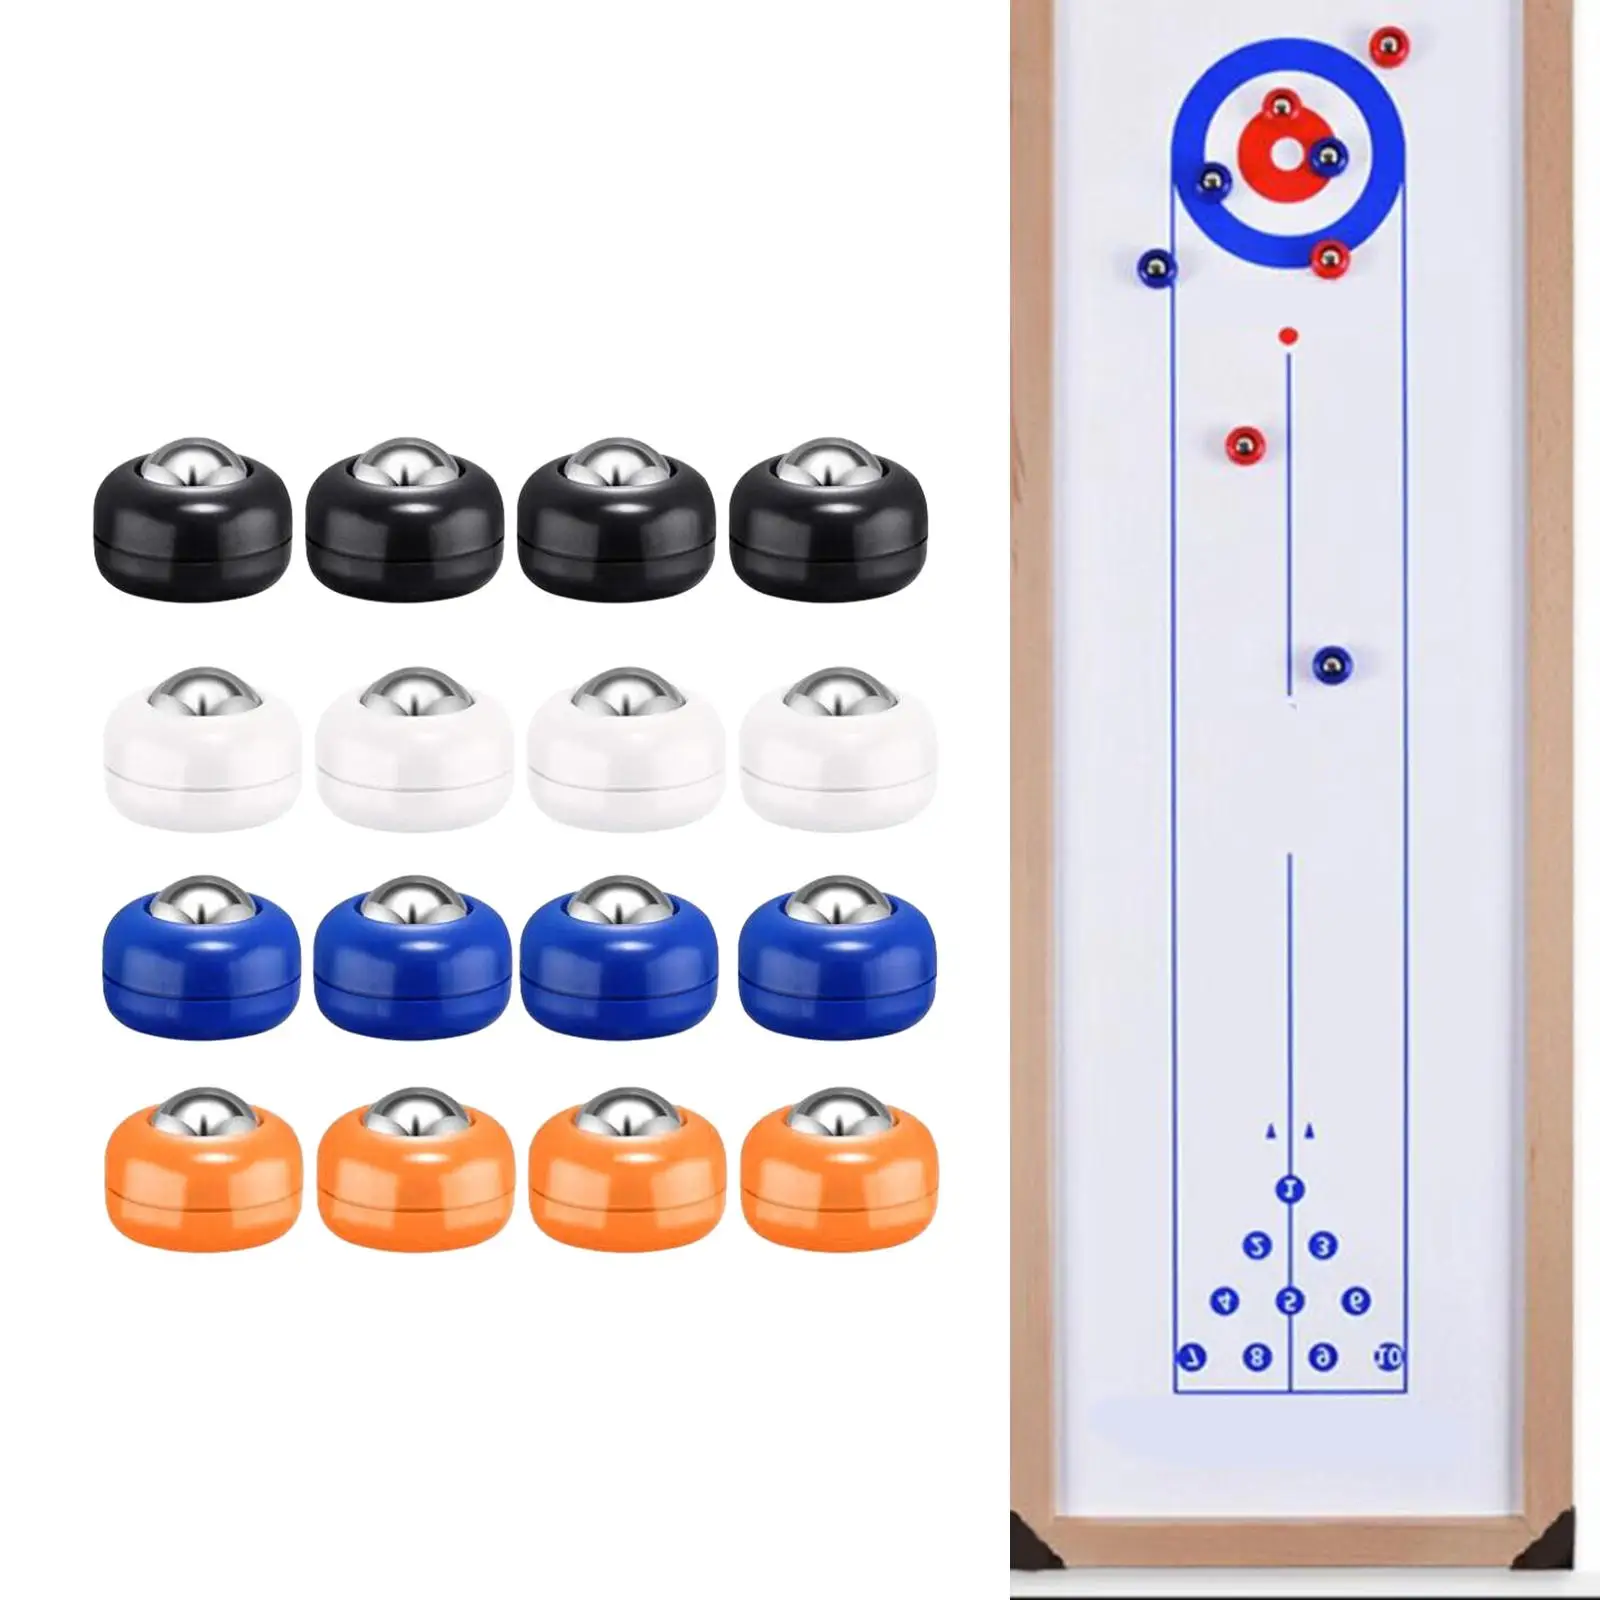 16x Shuffleboard Pucks Shuffleboard Curling Accessories 4 Colors Shuffleboard Table Pucks for Shuffleboard Enthusiasts Playing